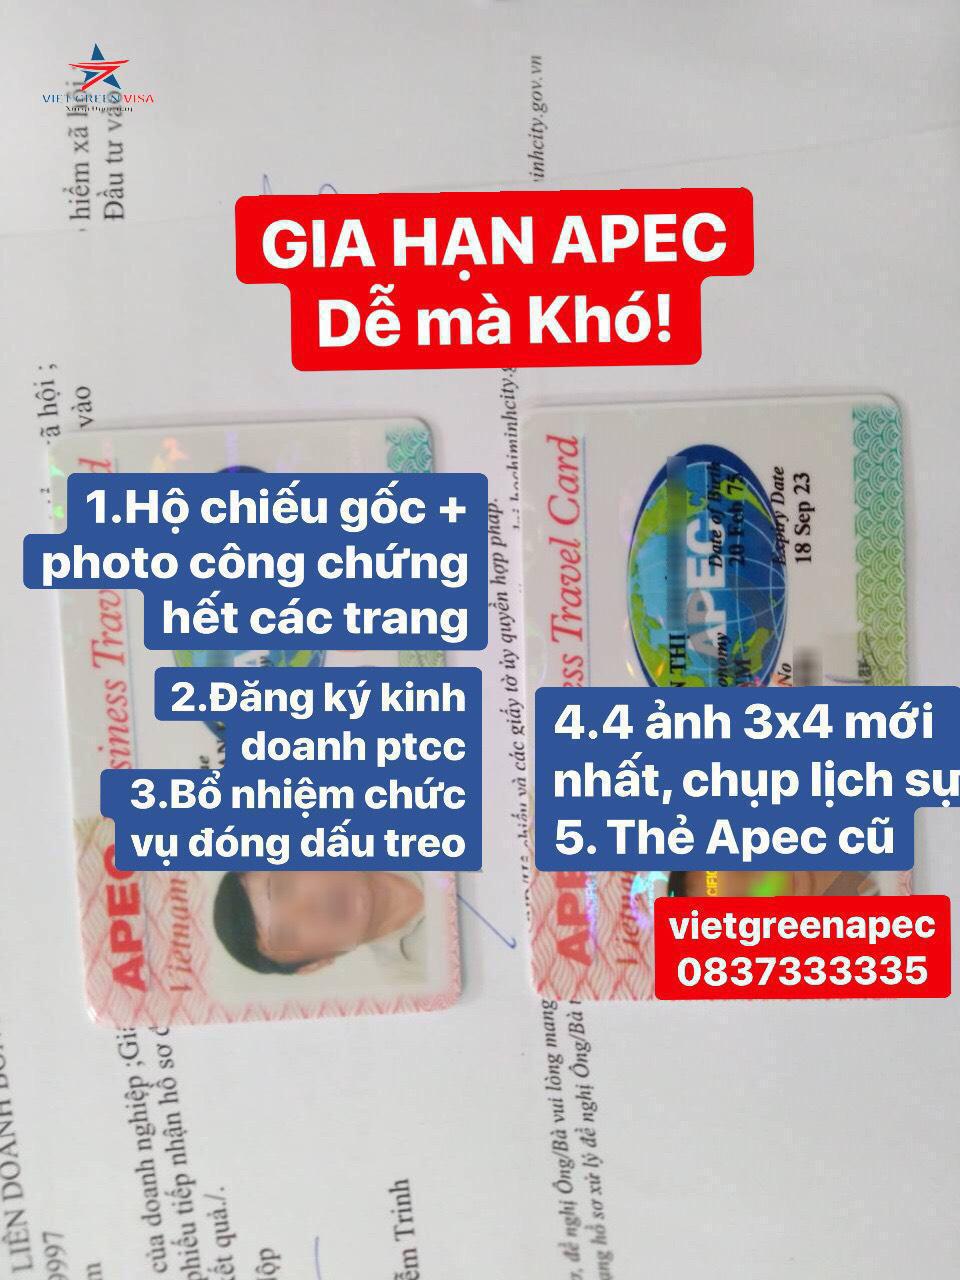 Dịch vụ làm thẻ Apec tại Ninh Thuận bảo đảm, tiết kiệm